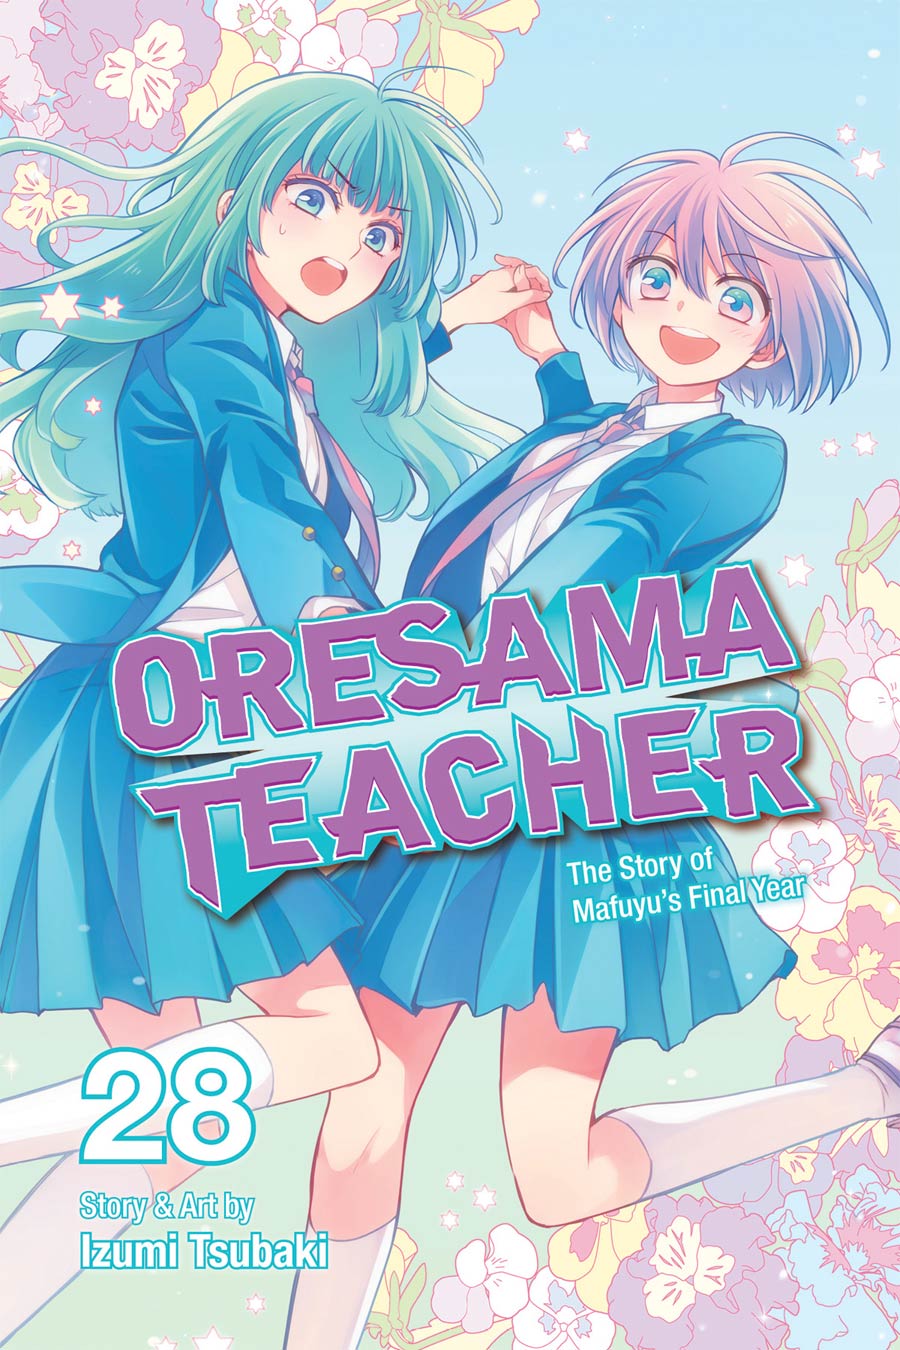 Oresama Teacher Vol 28 GN